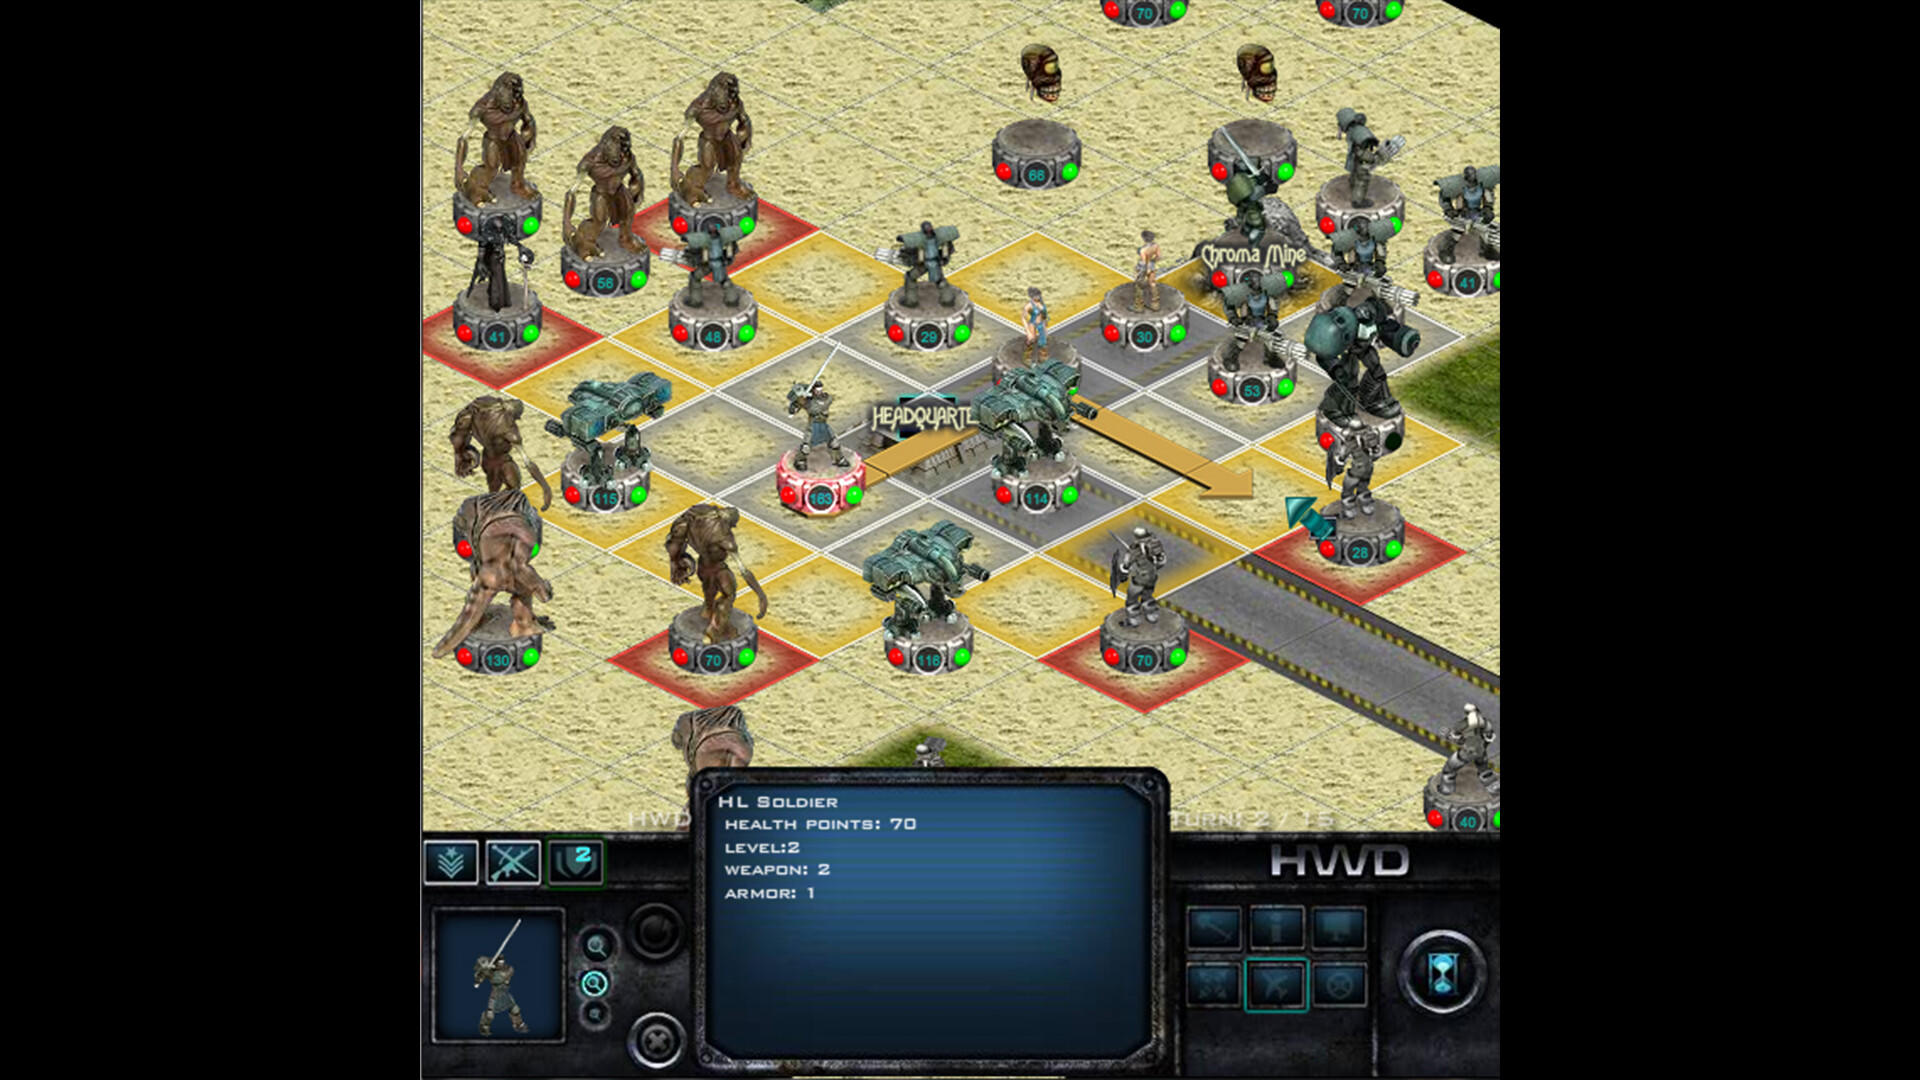 War Legends jogo de estratégia RTS versão móvel andróide iOS-TapTap